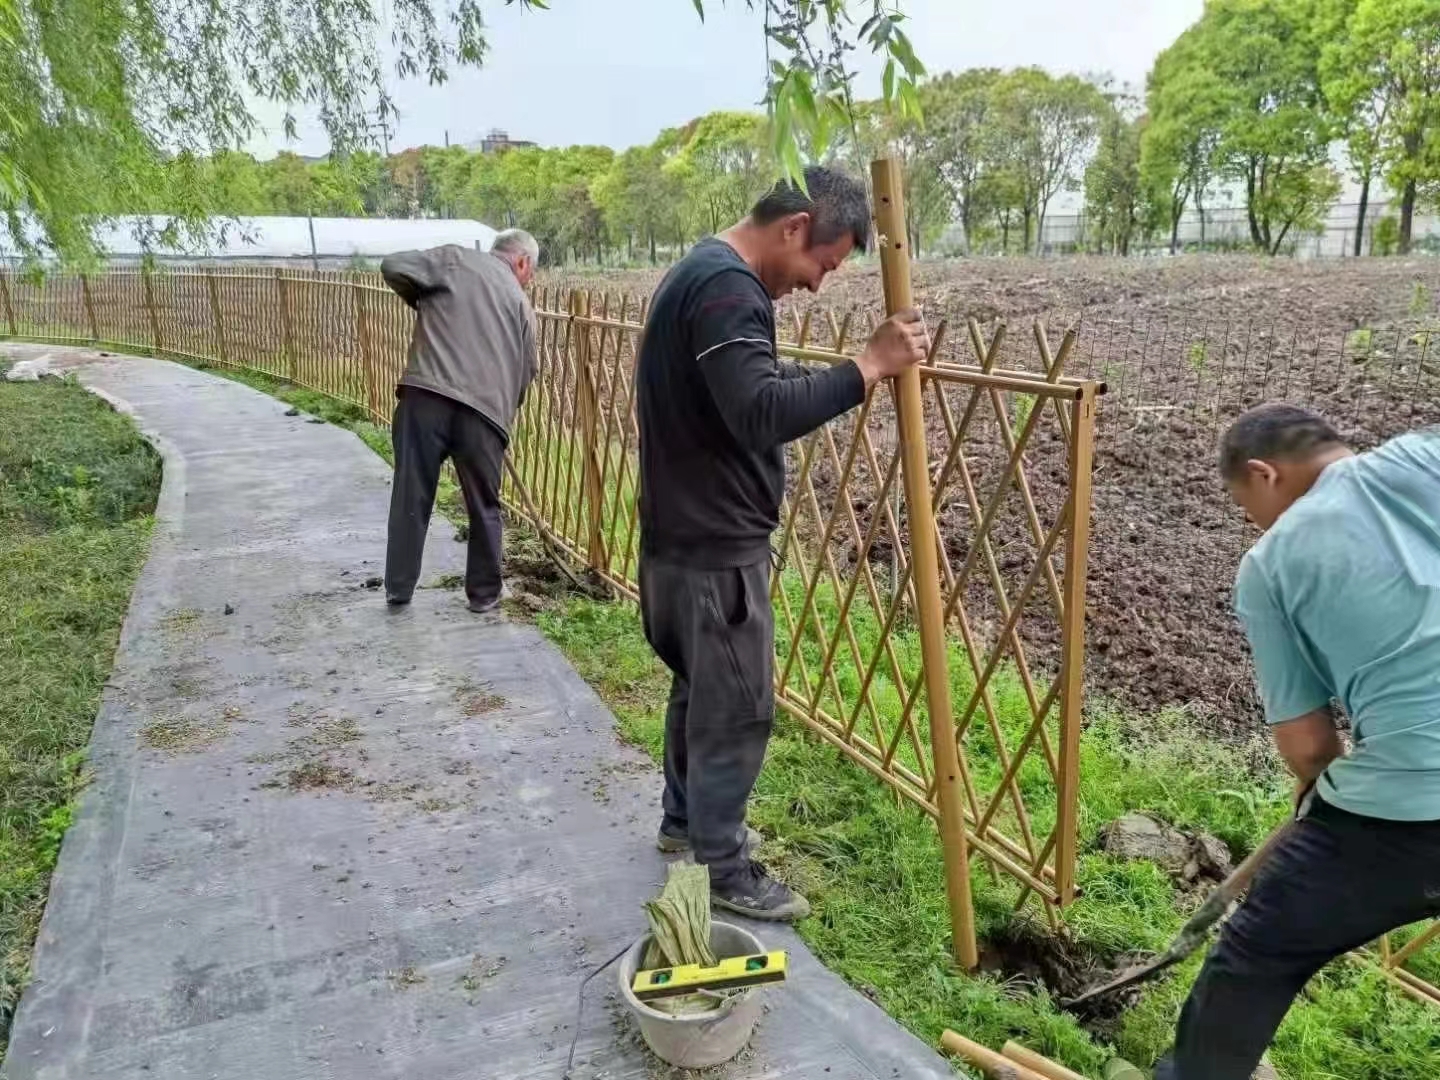 赤峰 竹篱笆 菜园护栏佛山南海木栅栏仿竹护栏